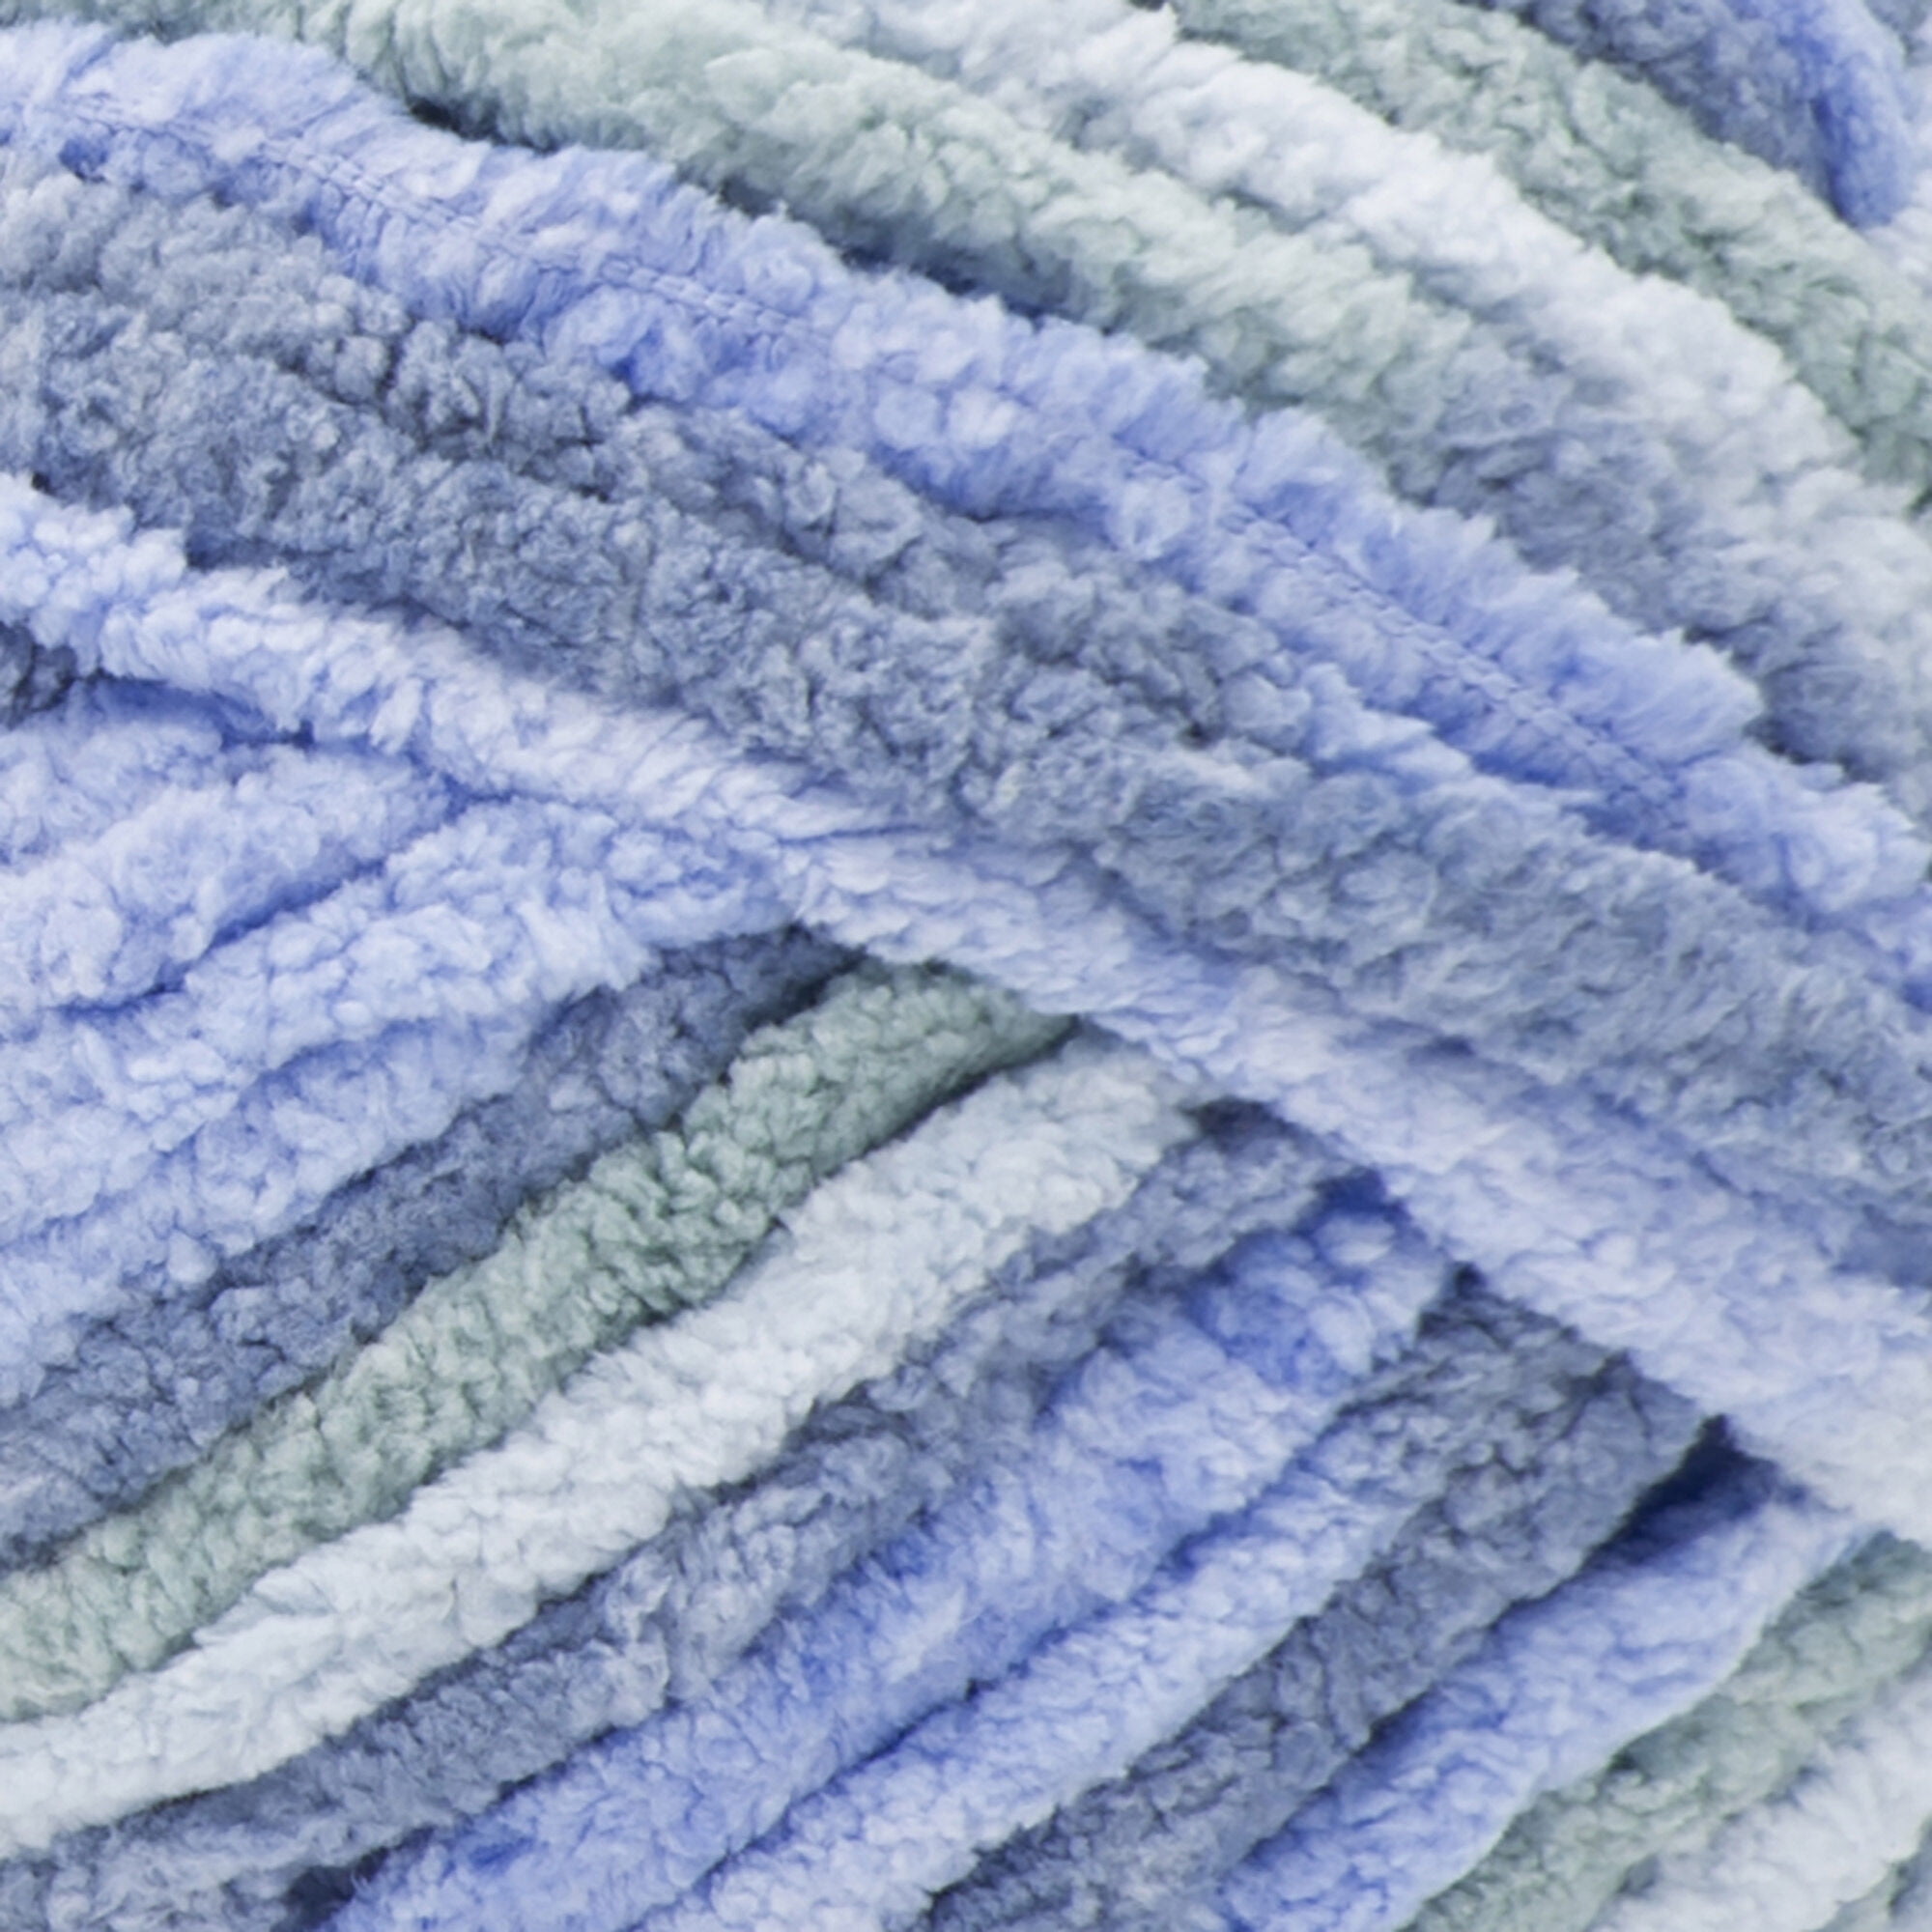 Bernat Baby Blanket Yarn 3.5 Oz Blue/Gray/White 2 Skeins BNWT